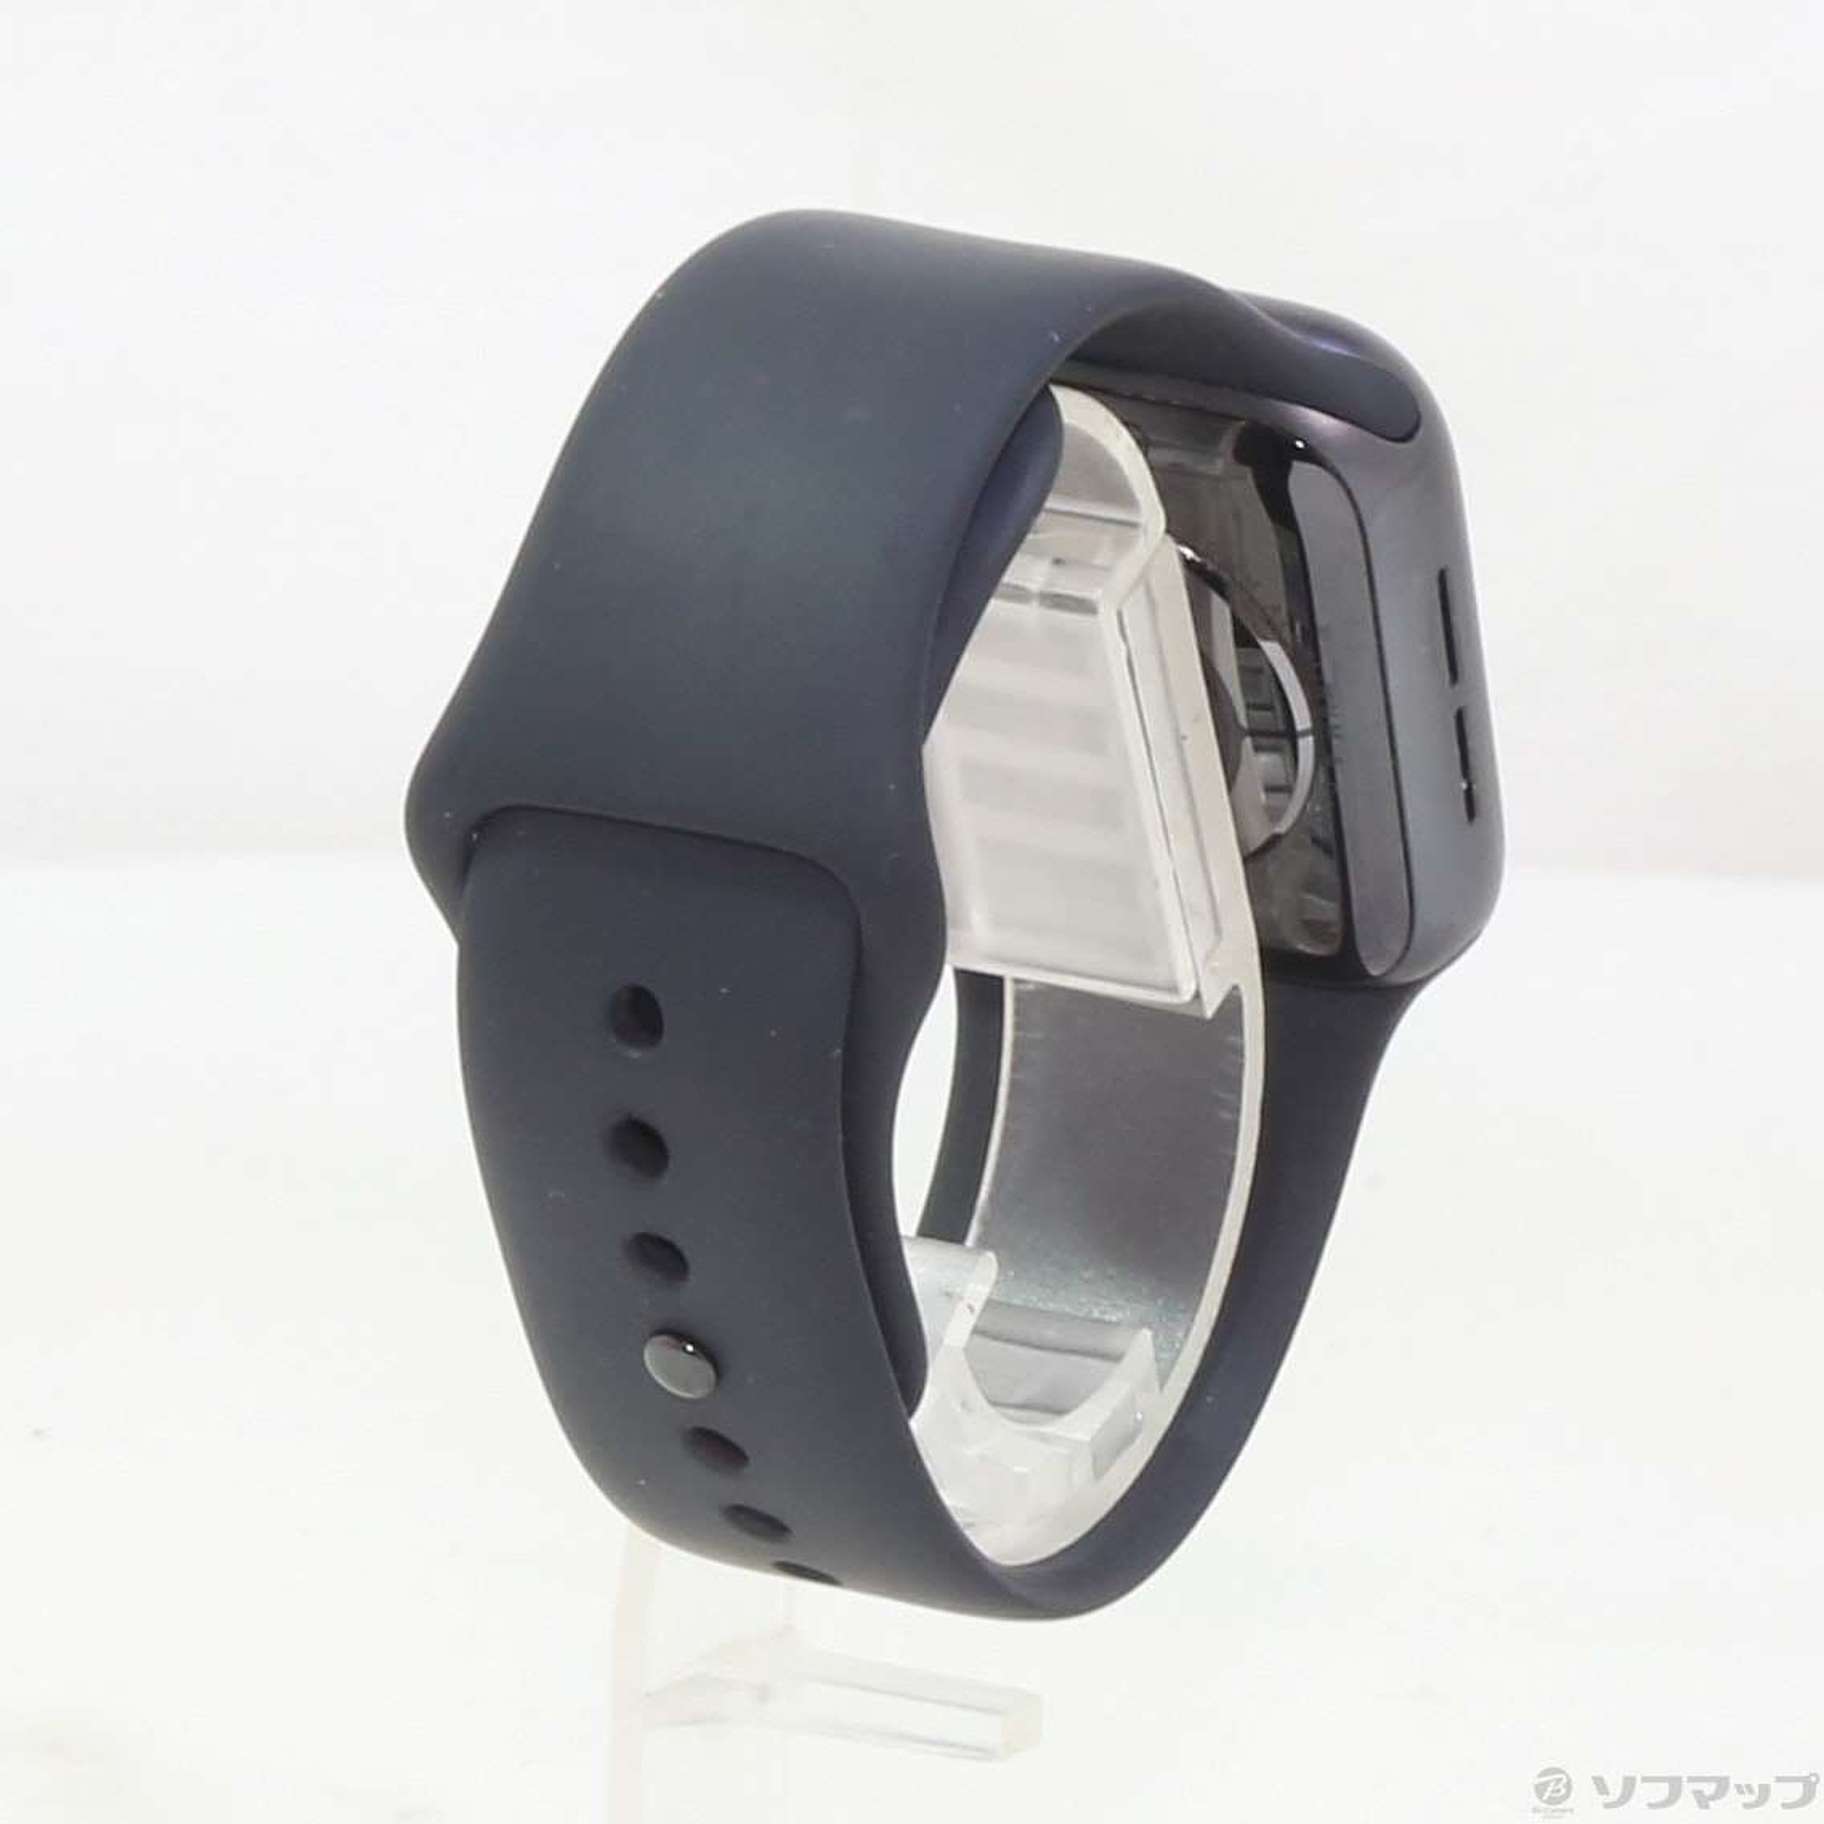 中古品〕 Apple Watch Series 4 GPS 40mm スペースグレイ